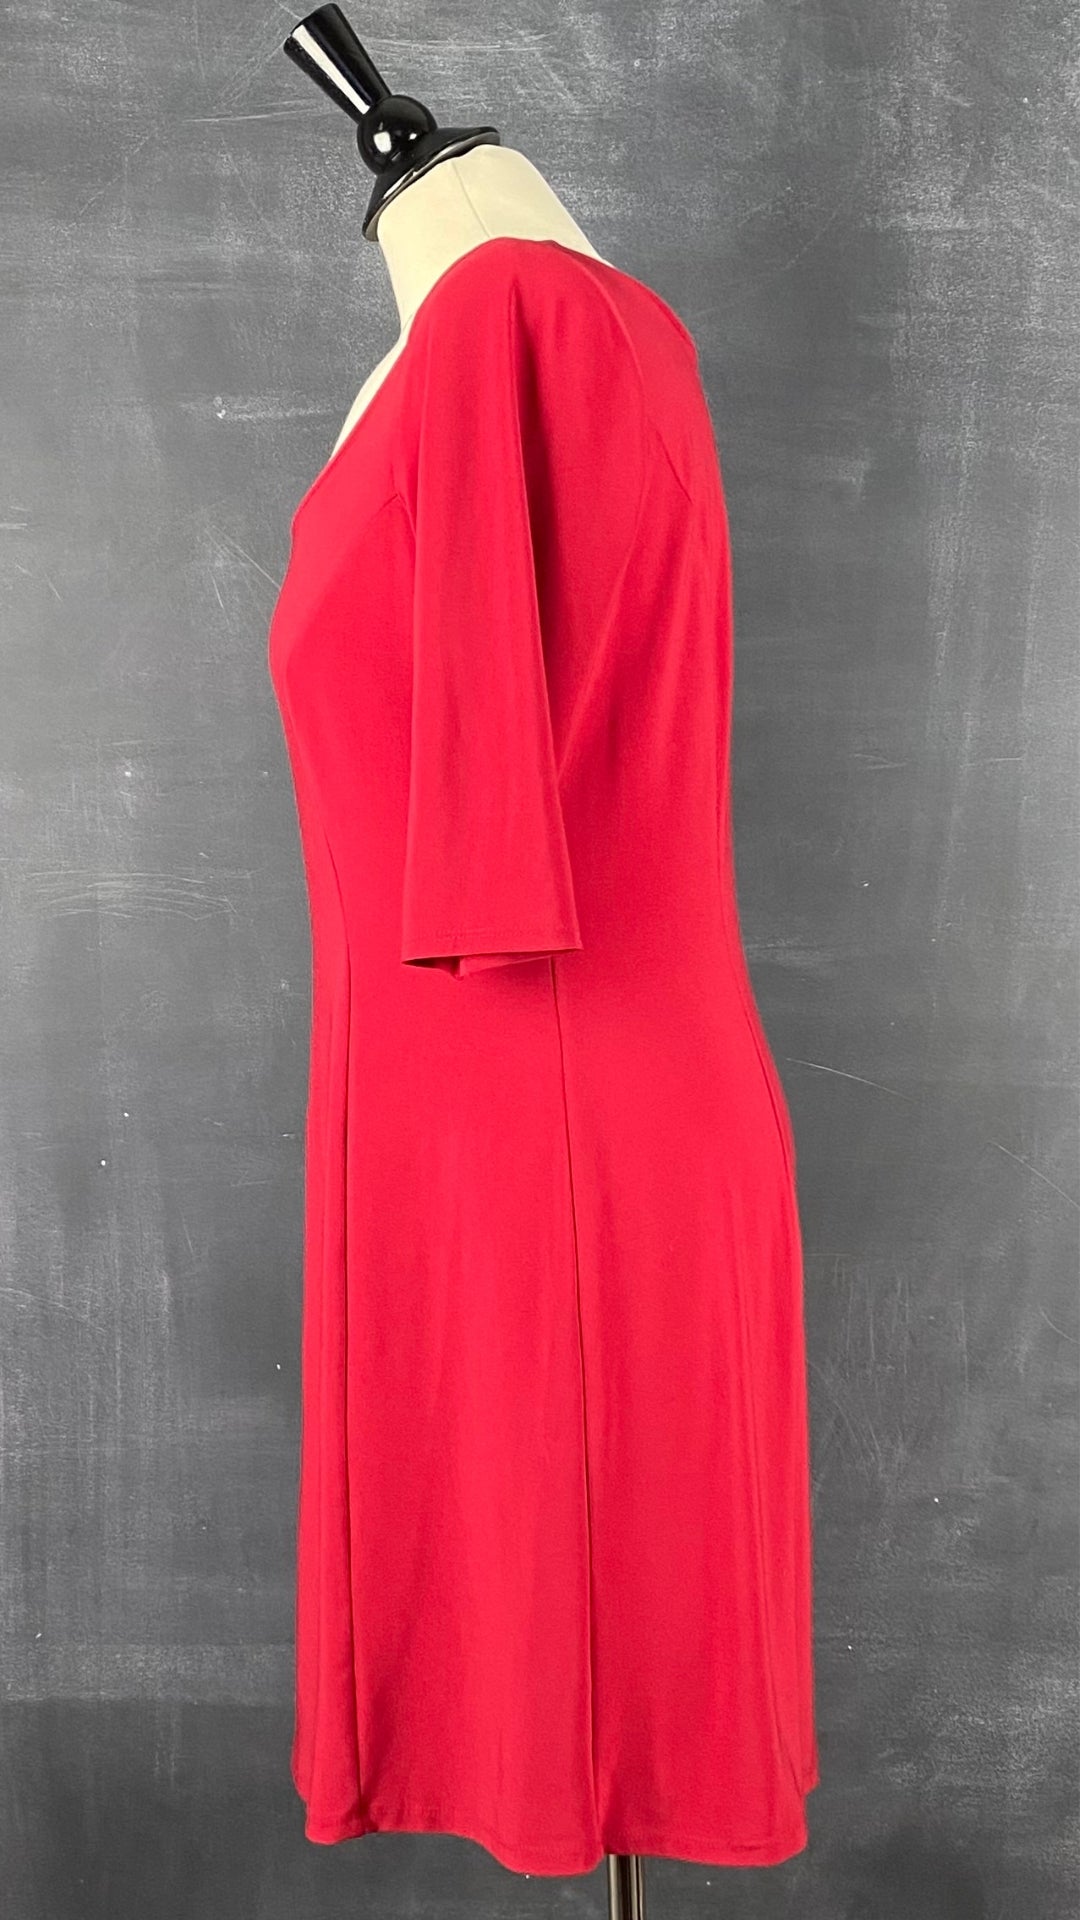 Robe cintrée rouge Isabelle Elie, taille large (m/l). Vue de côté.